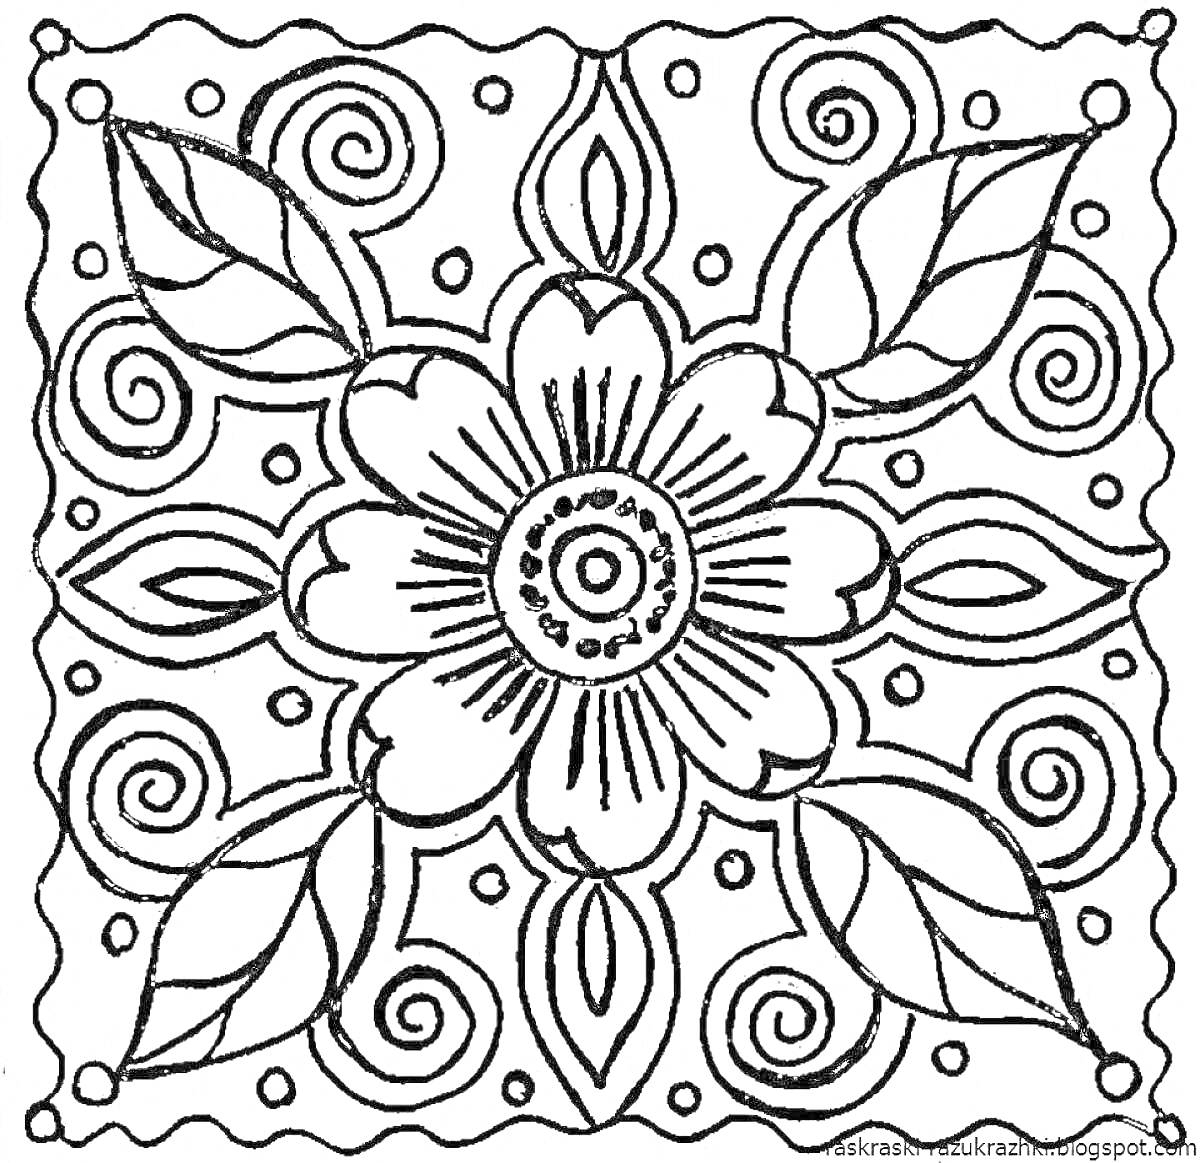 Цветочный орнамент с листьями, спиралями и волнистым узором по краям